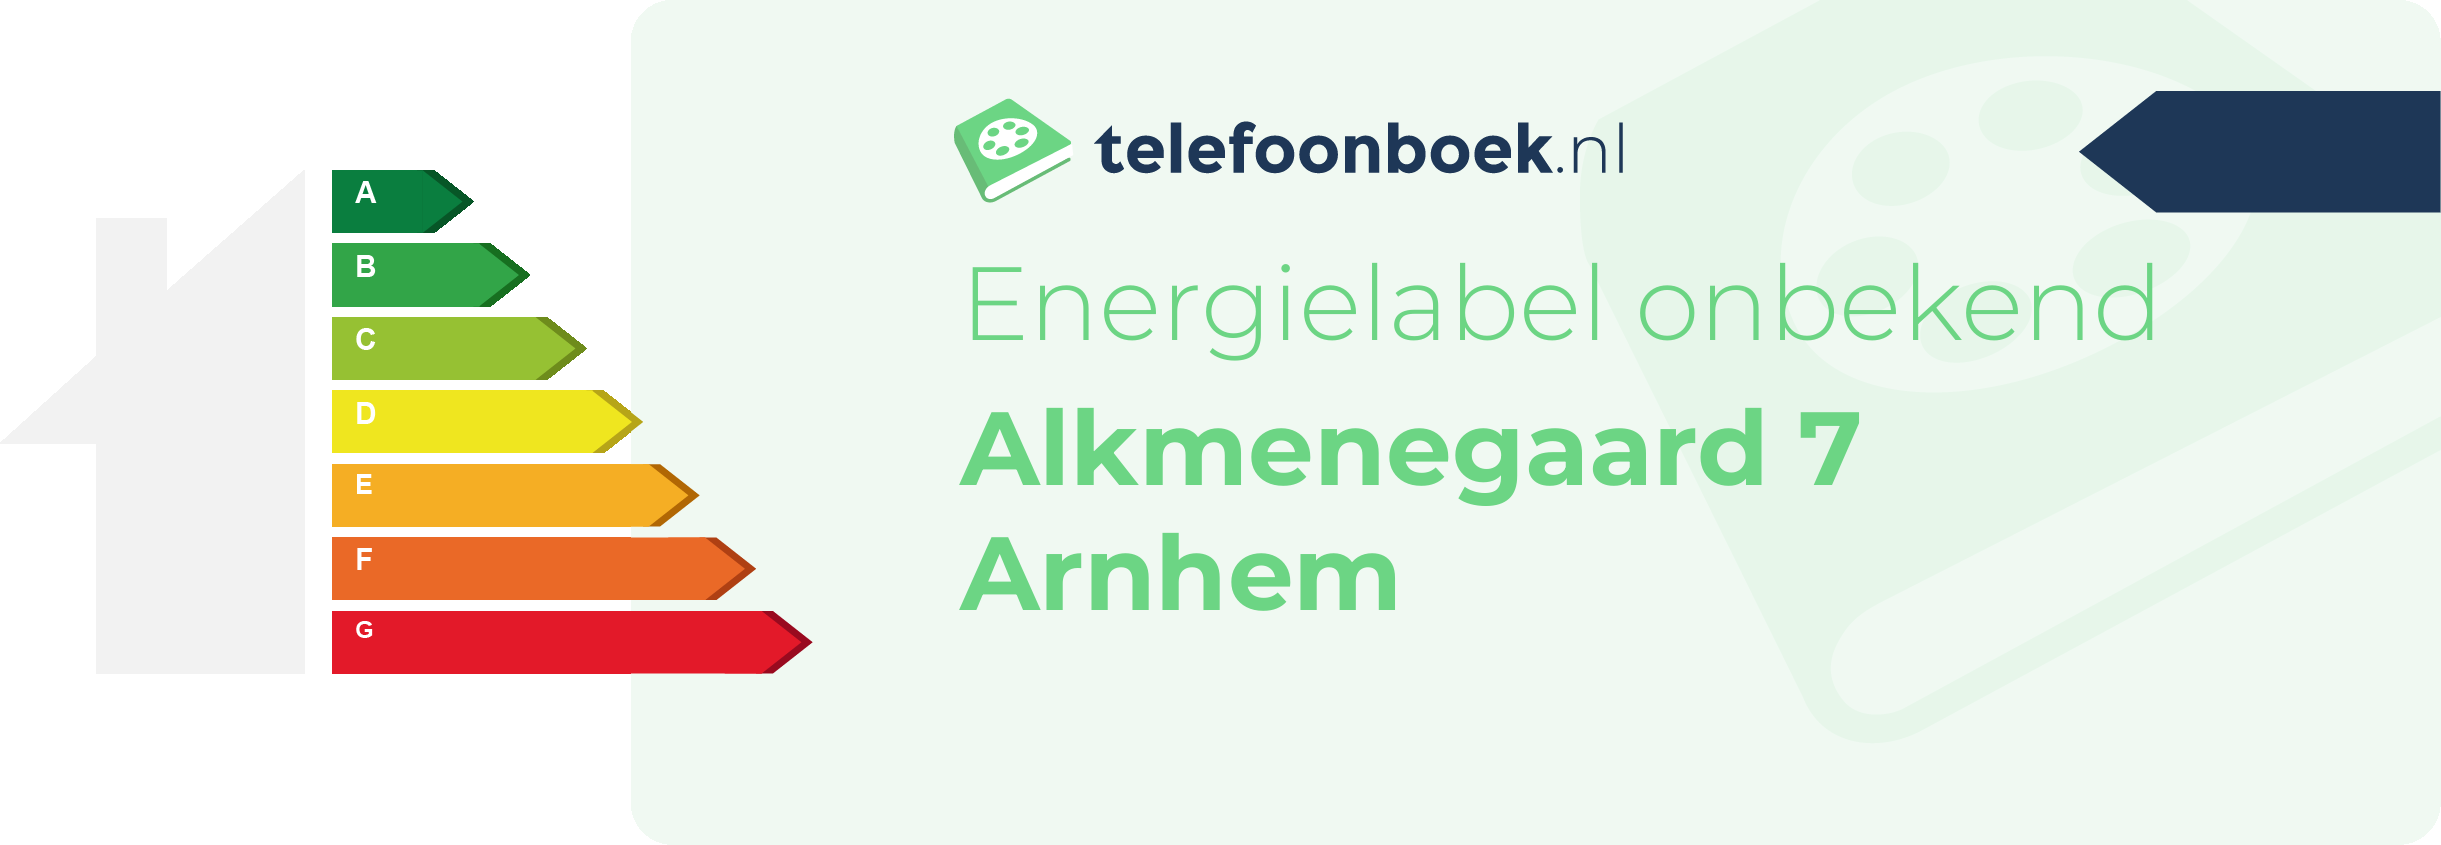 Energielabel Alkmenegaard 7 Arnhem